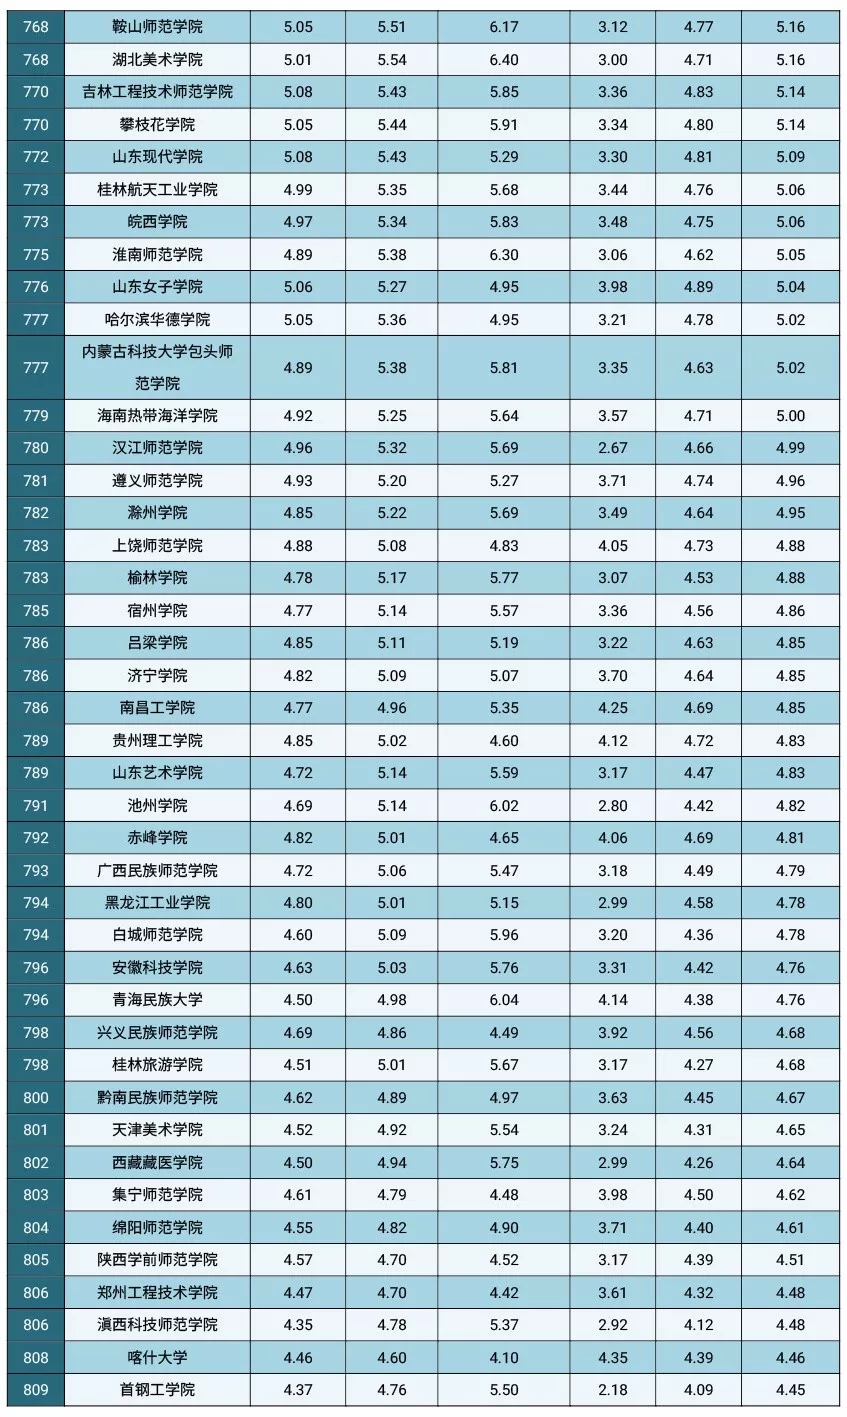 2019广东高校排行榜_围观 广东高校 薪酬榜 出炉 你的收入符合母校的水